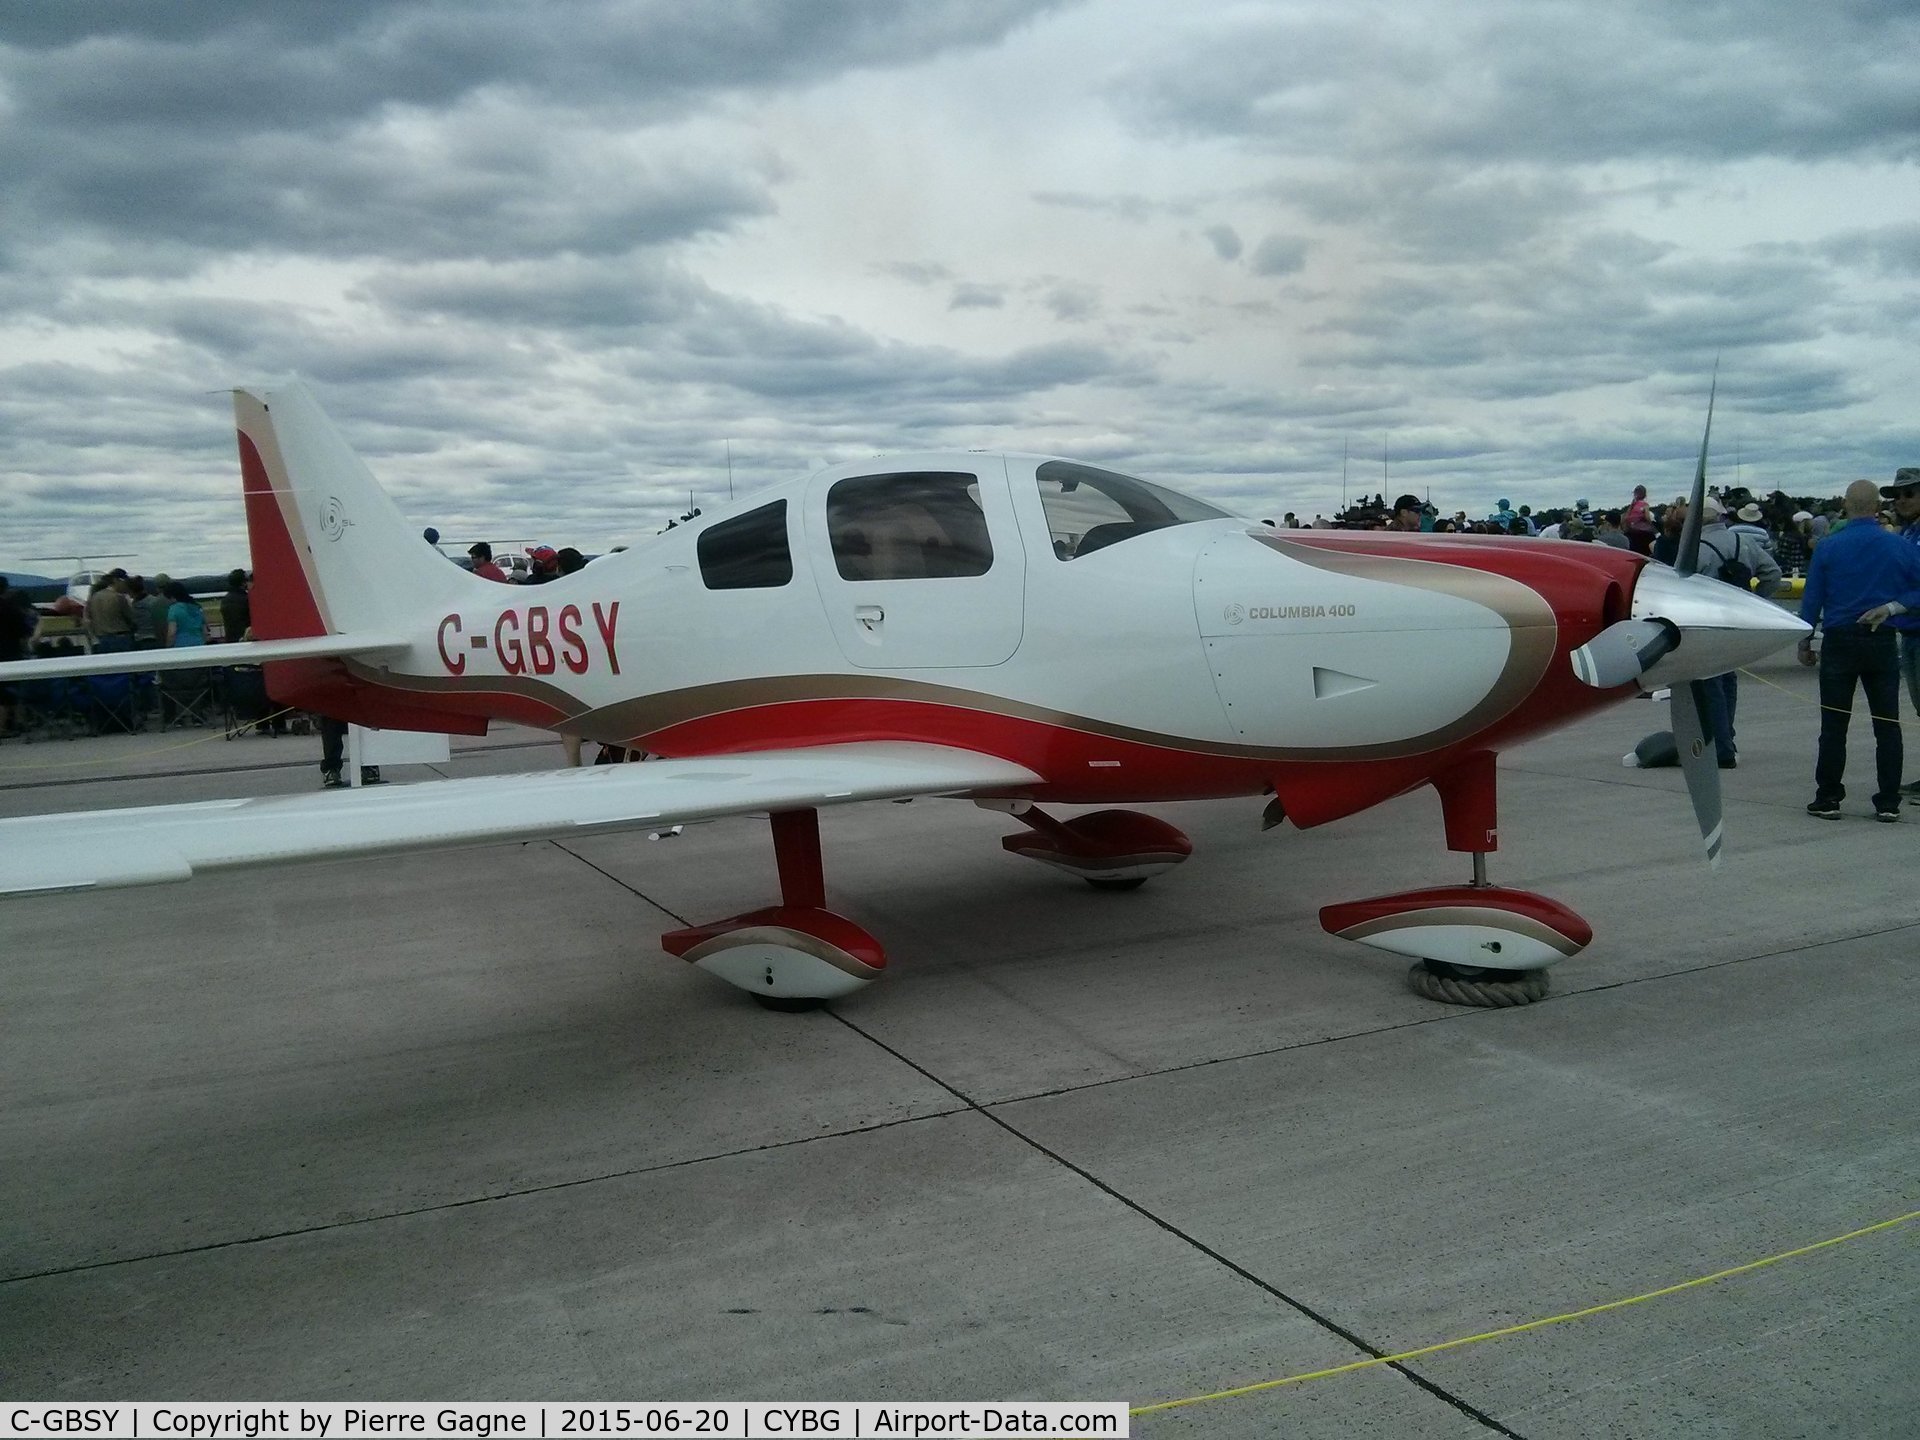 C-GBSY, 2007 Lancair LC41-550FG C/N 41757, C-GBSY at 2015 Bagotville International Air show